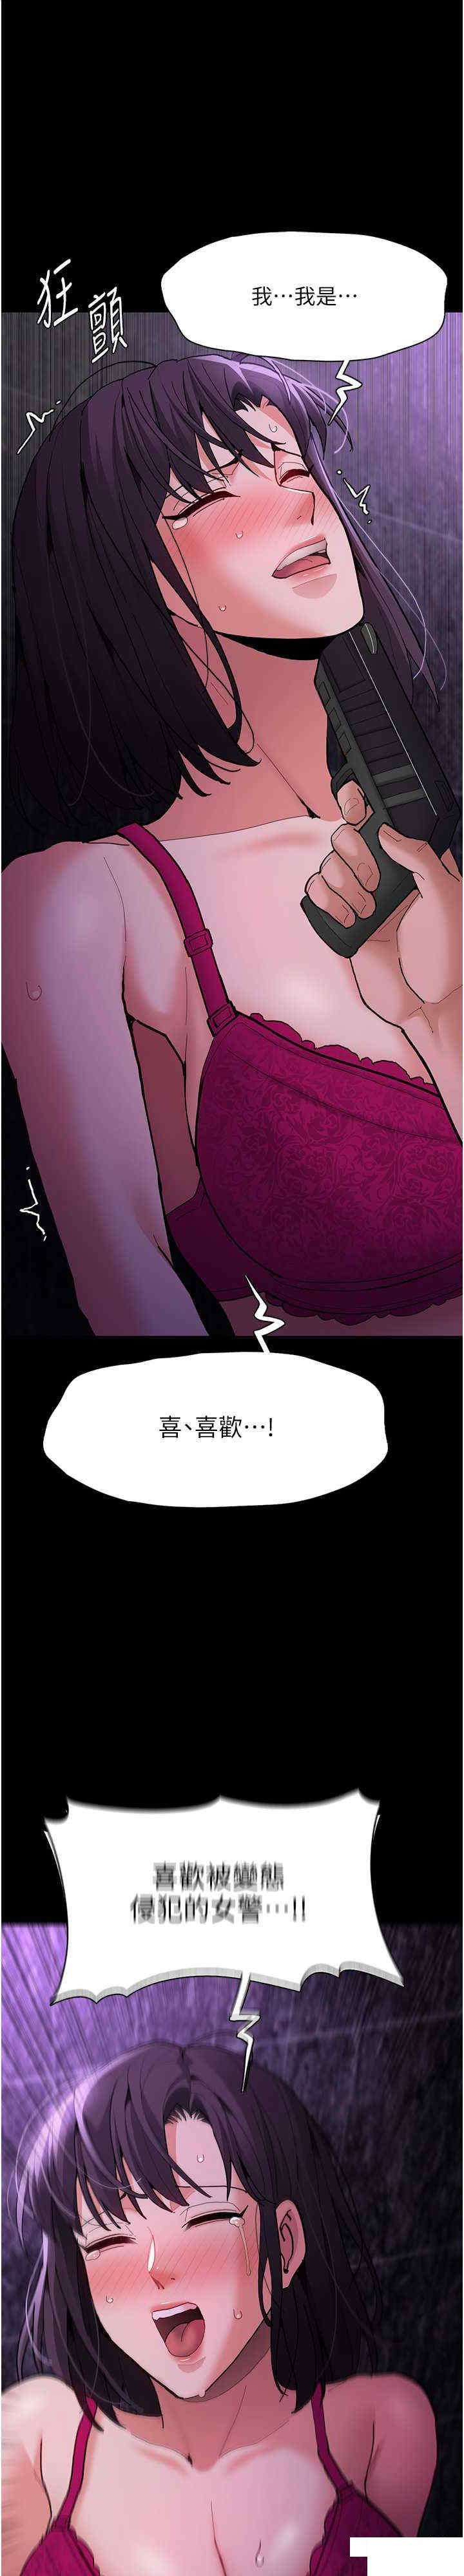 韩国污漫画 癡漢成癮 第61话 淫水溅满地的妓女 1